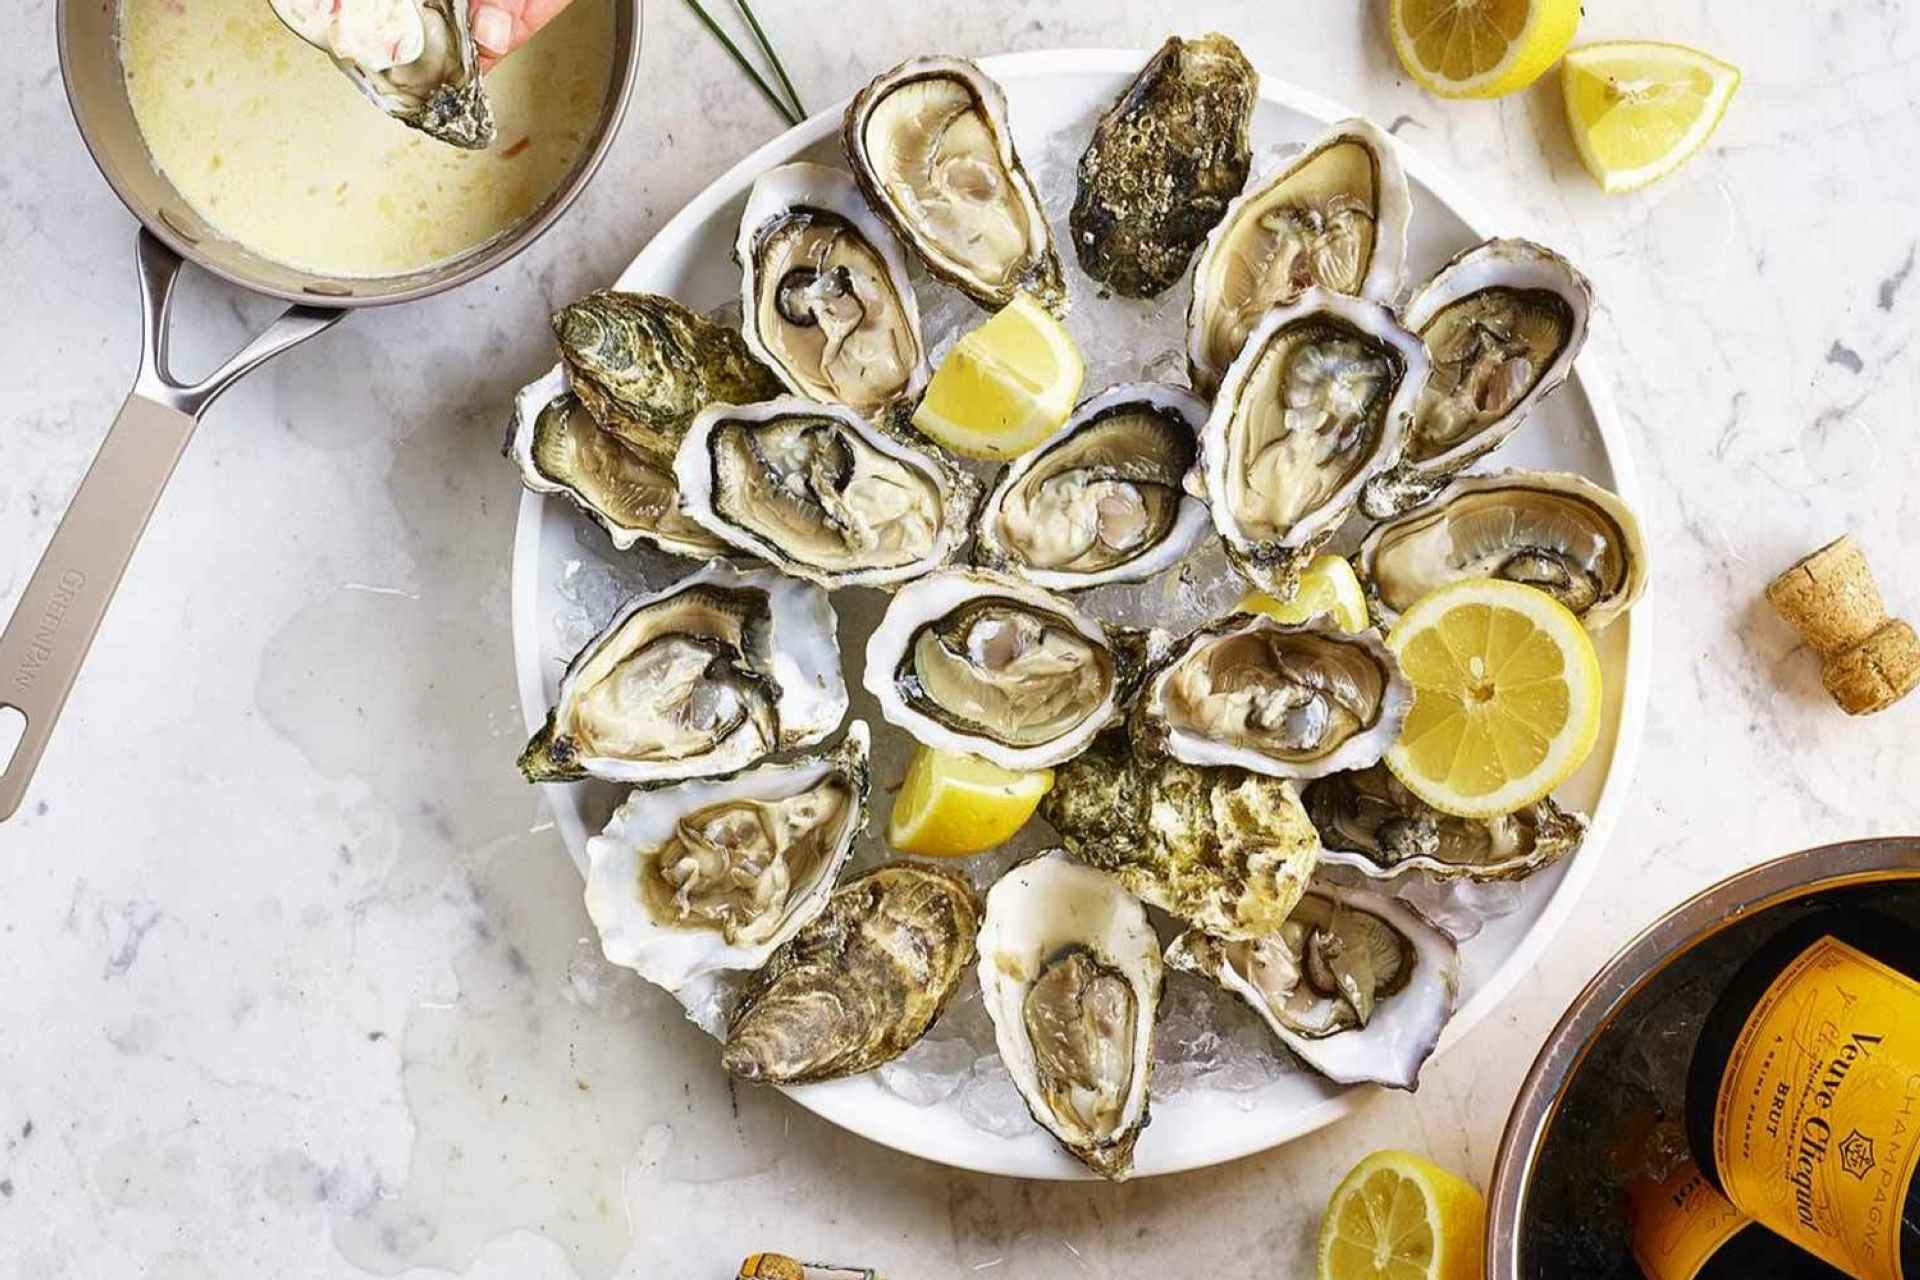 shellfish recipes. oyster recipes, clam recipes